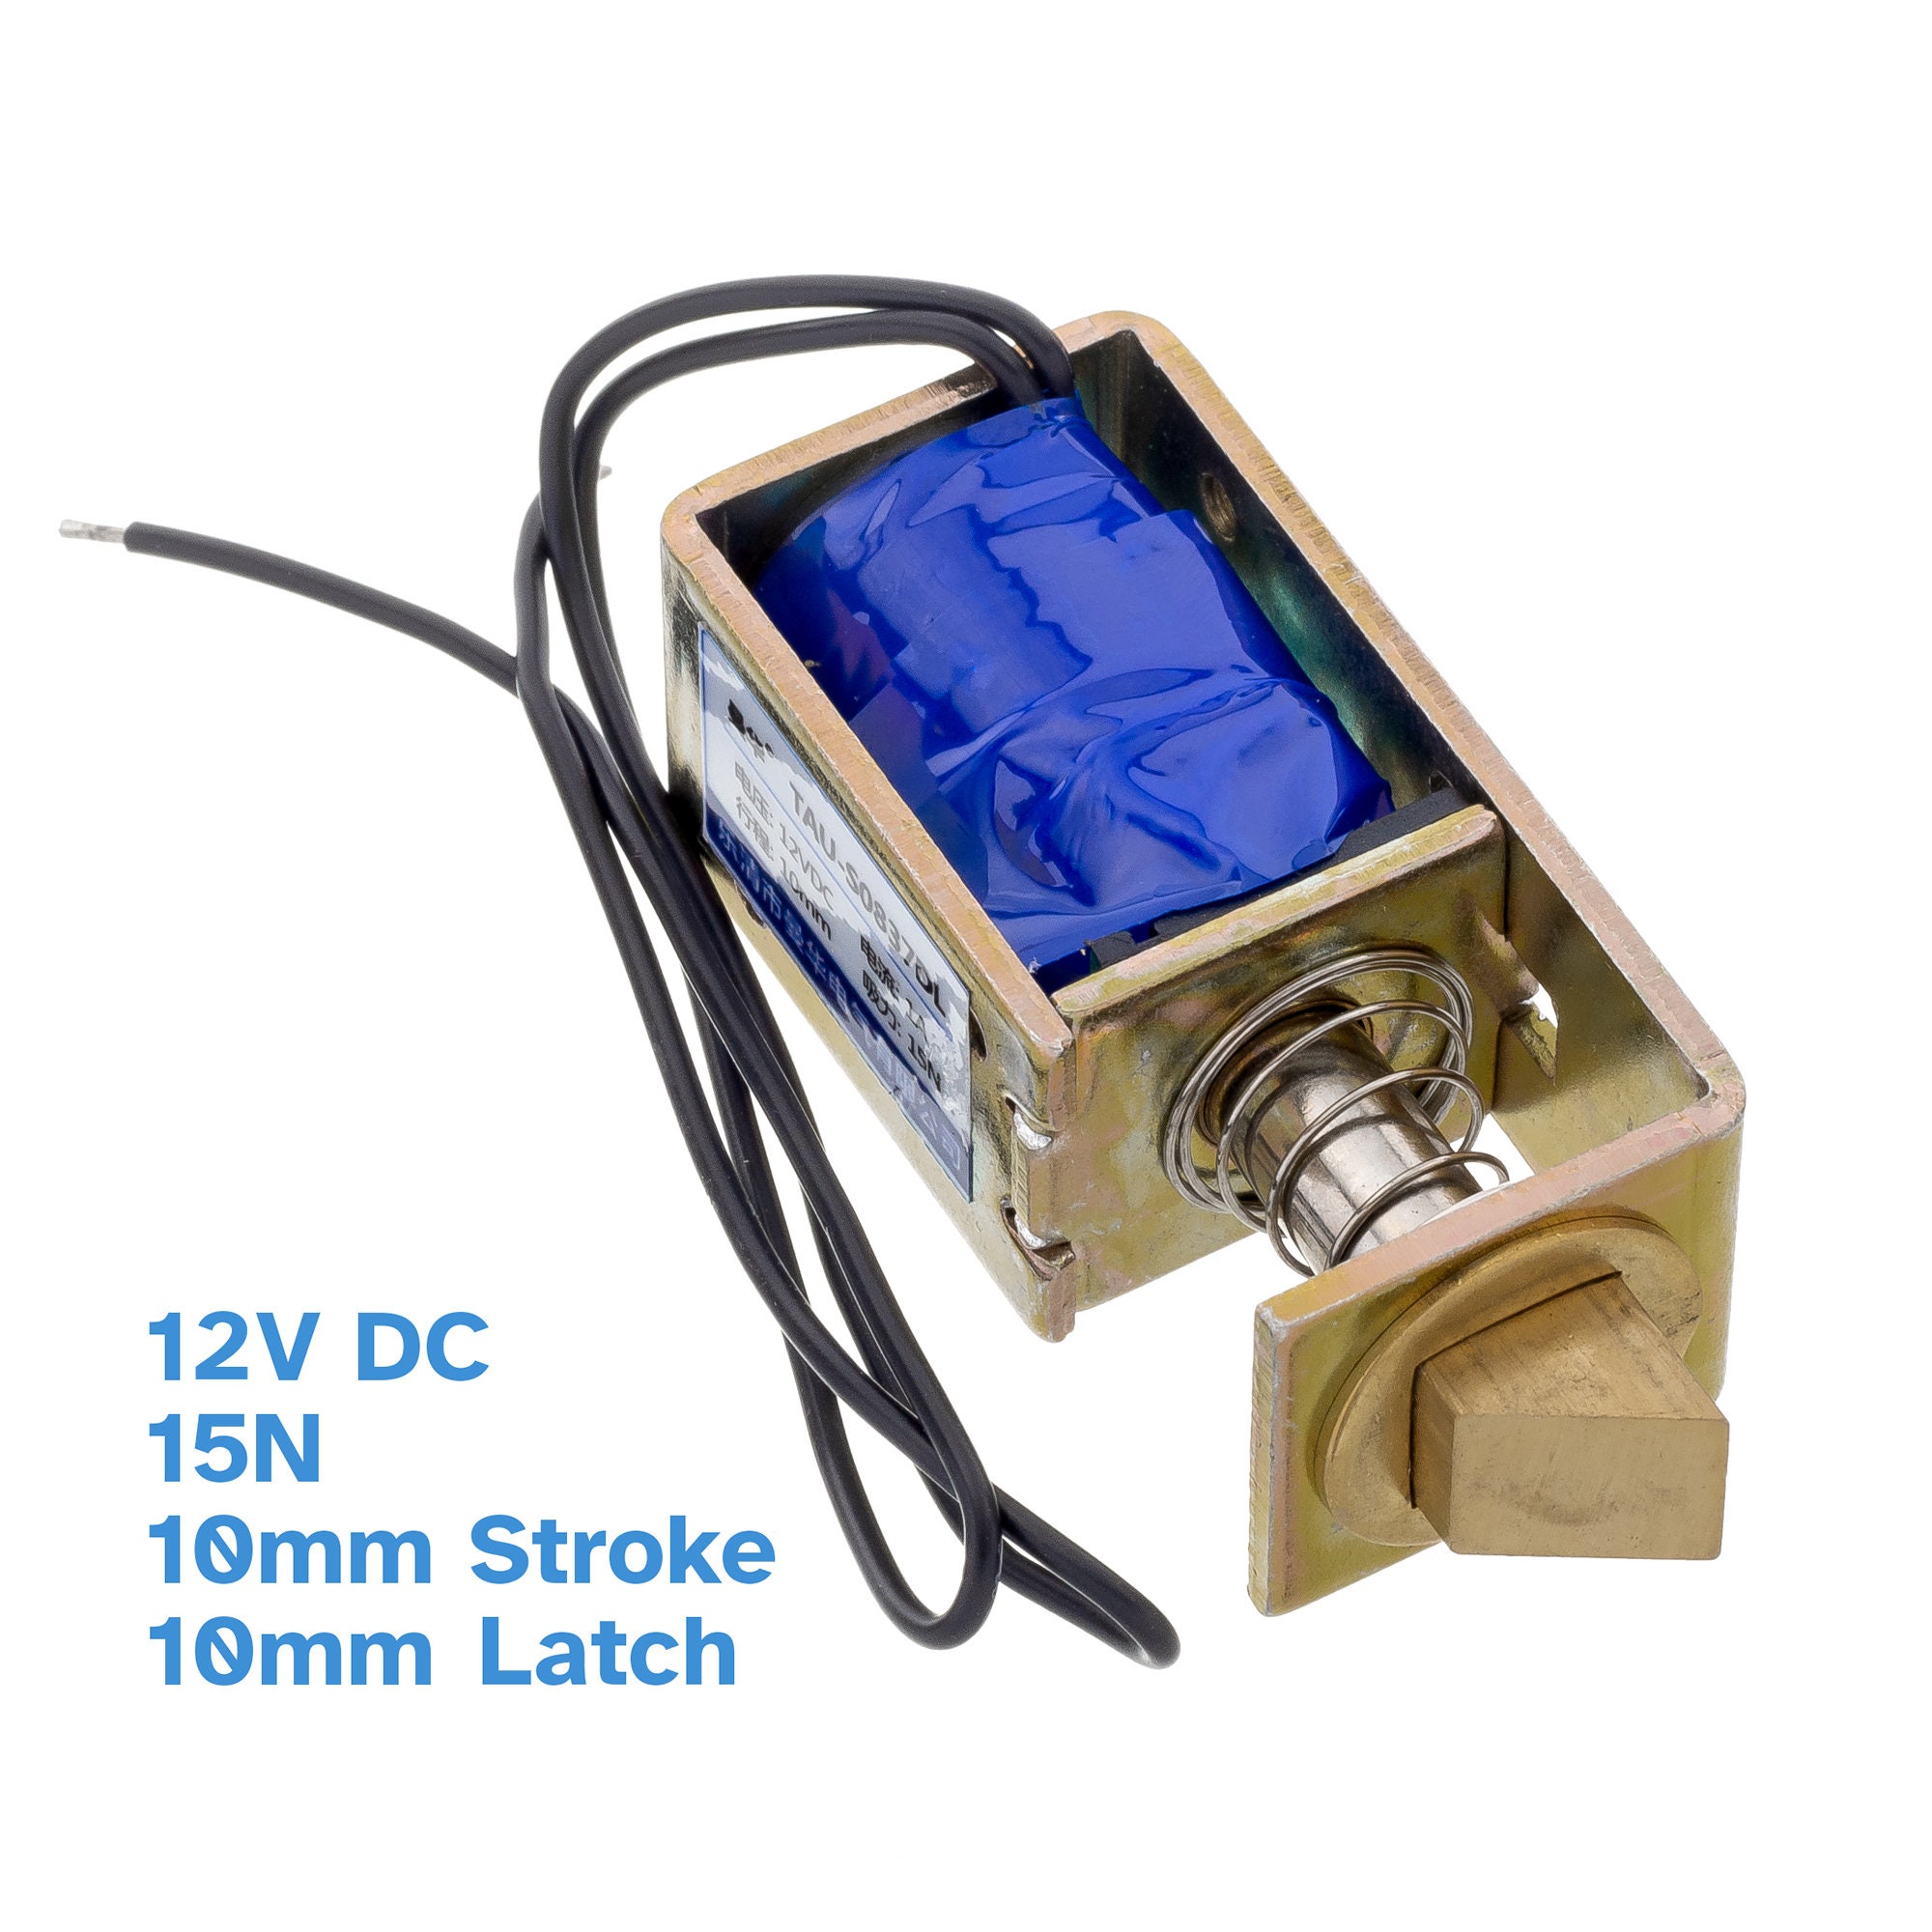 Rundes Elektroschloss 12V Solenoid Latch verschlossen, wenn eingeschaltet  Elektronischer Schließer Elektromagnet Freigabe Schranktür Sicherer  Verschlussschalter - .de